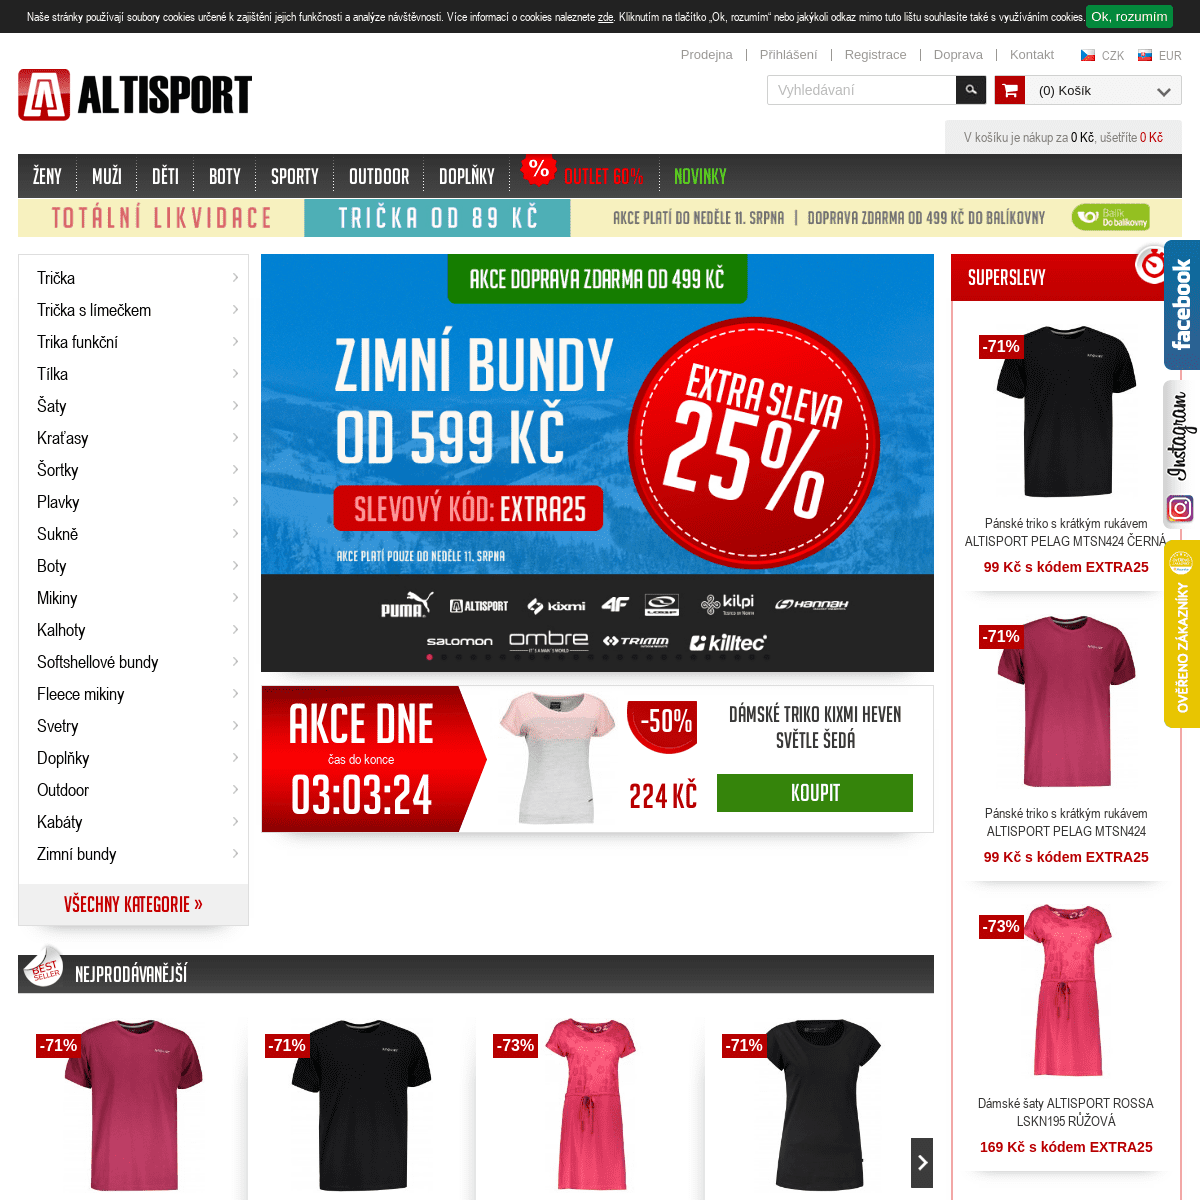 ALTISPORT - oblečení, obuv - slevy až -70%